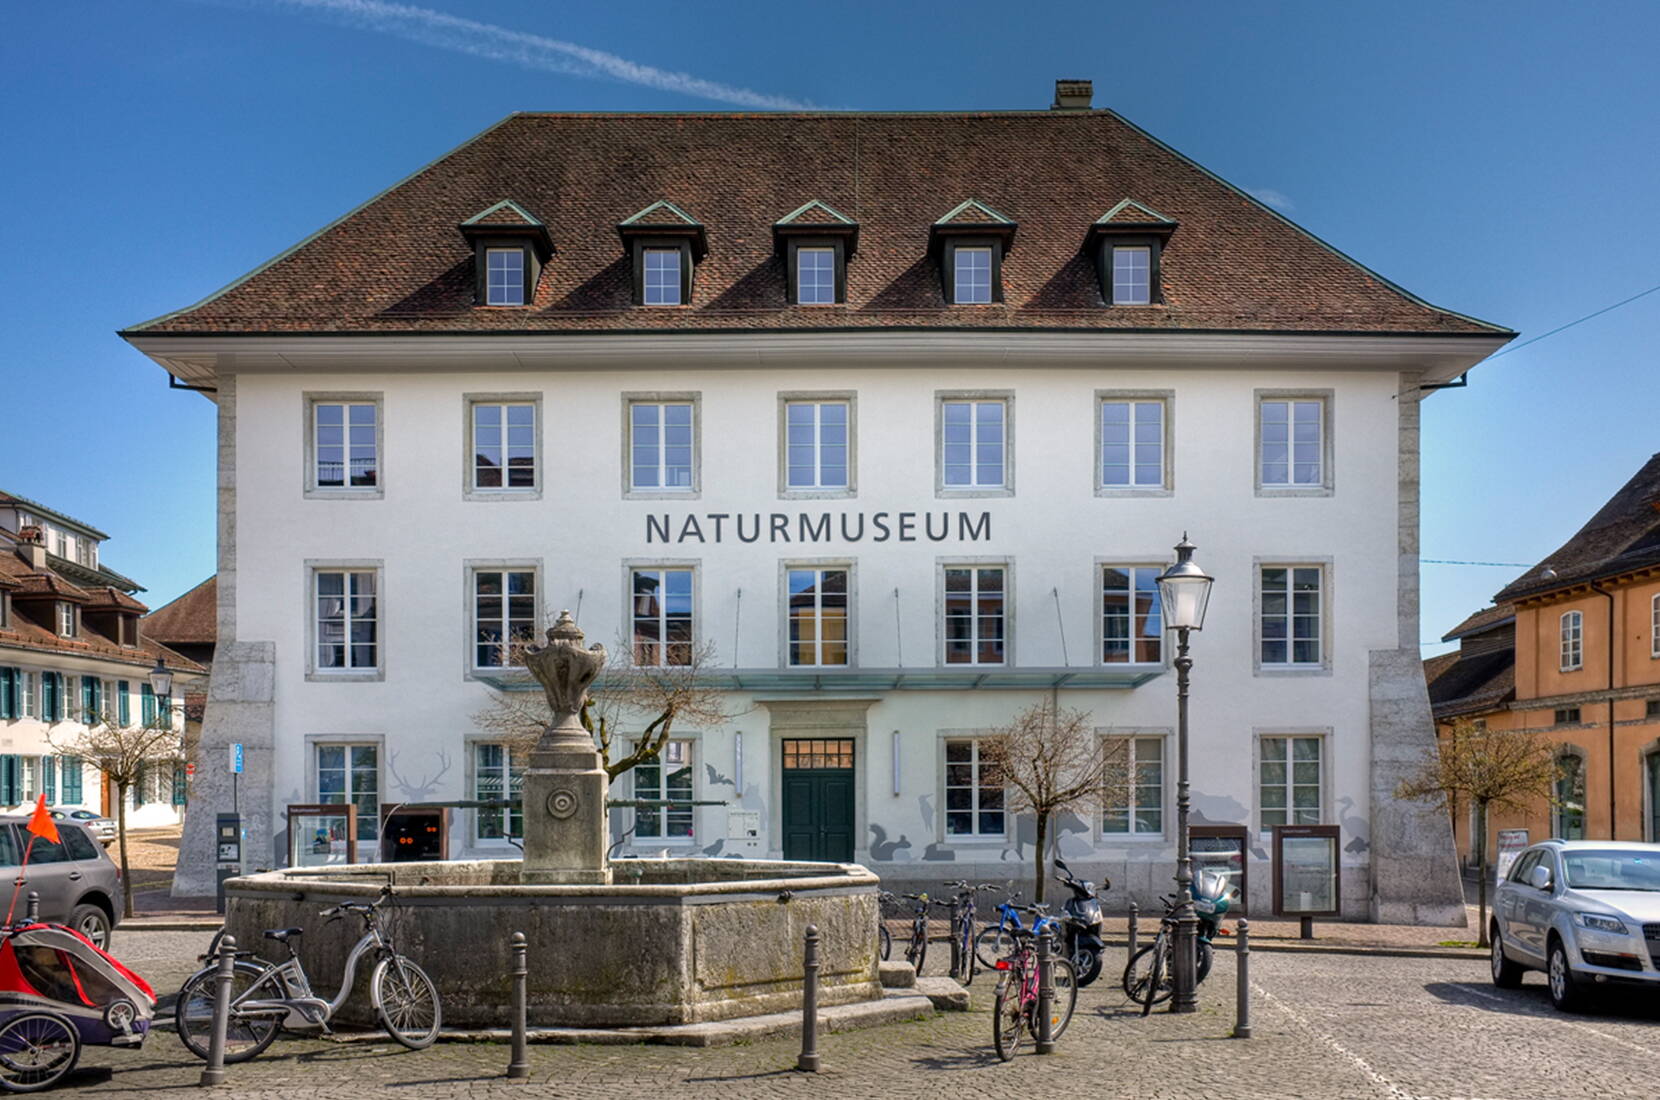 Familienausflug Naturmuseum Solothurn. Das Naturmuseum Solothurn weckt bei seinen Besucherinnen und Besucher Interesse, Begeisterung, Verständnis und Liebe für die Natur.